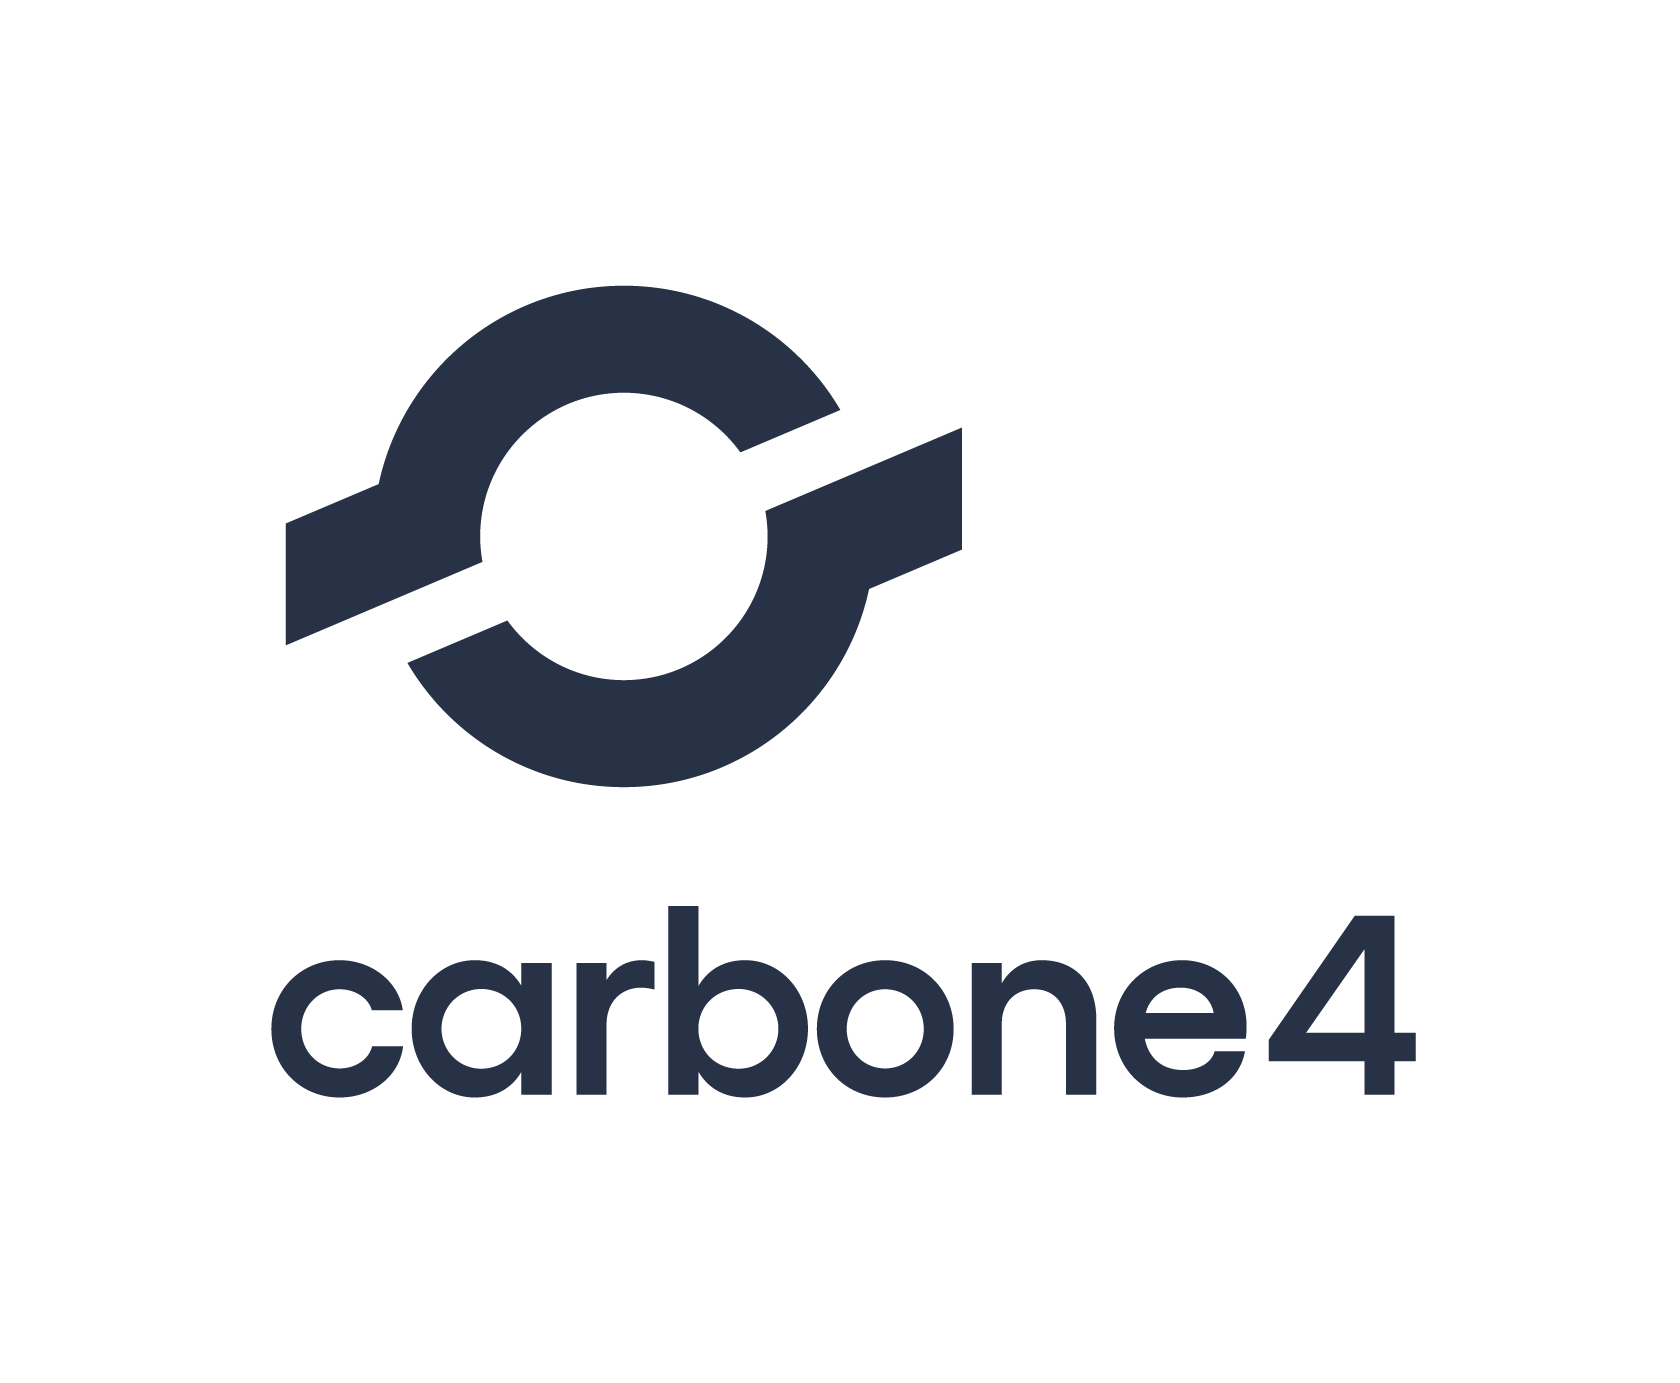 C4 Logo